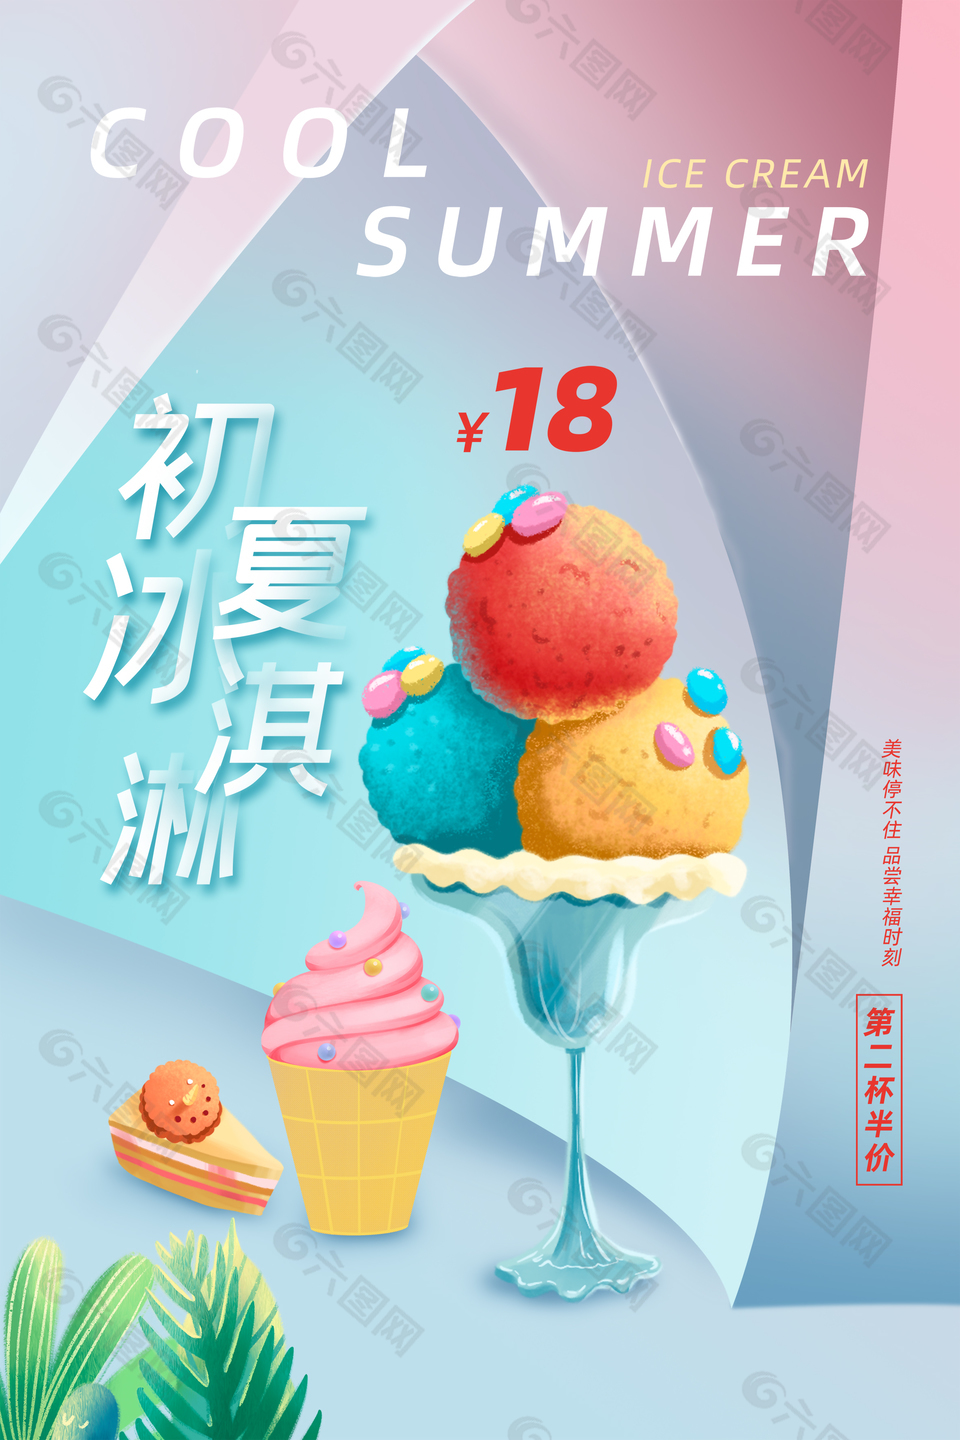 彩色冰淇淋宣传海报